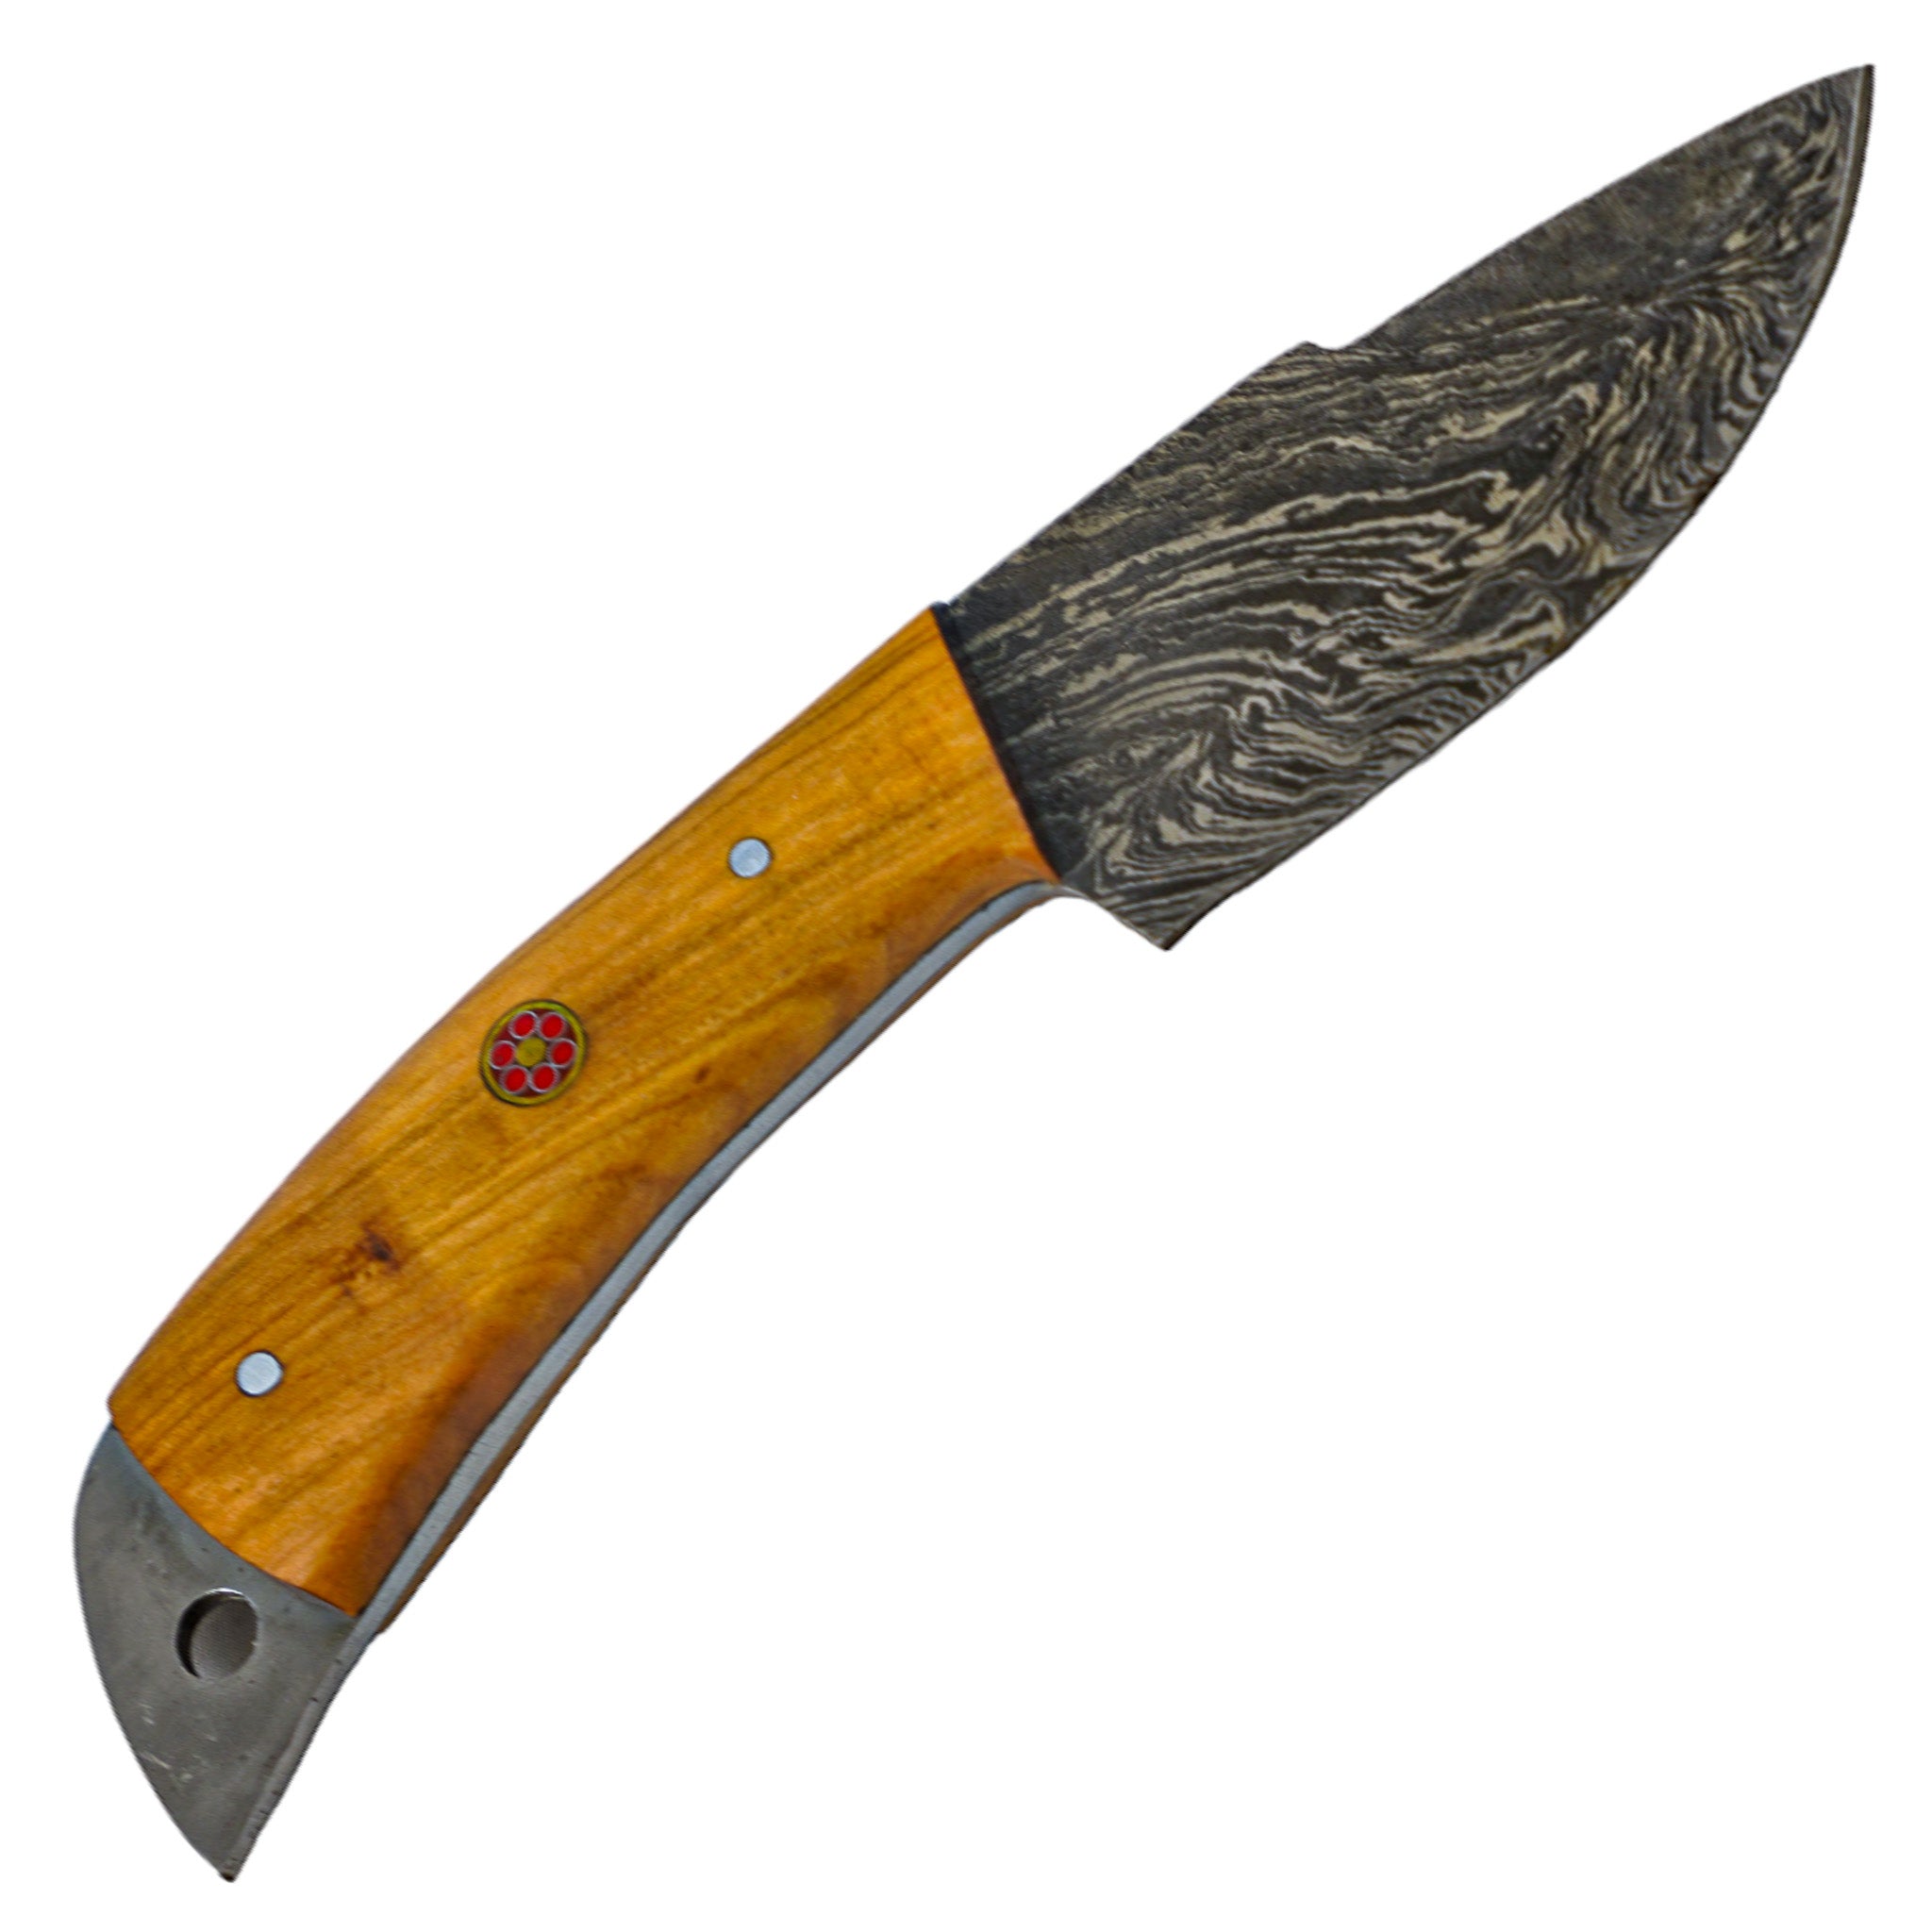 Image of Skinner Knife- Skinning Knife- High Carbon 1095 Steel - 7"